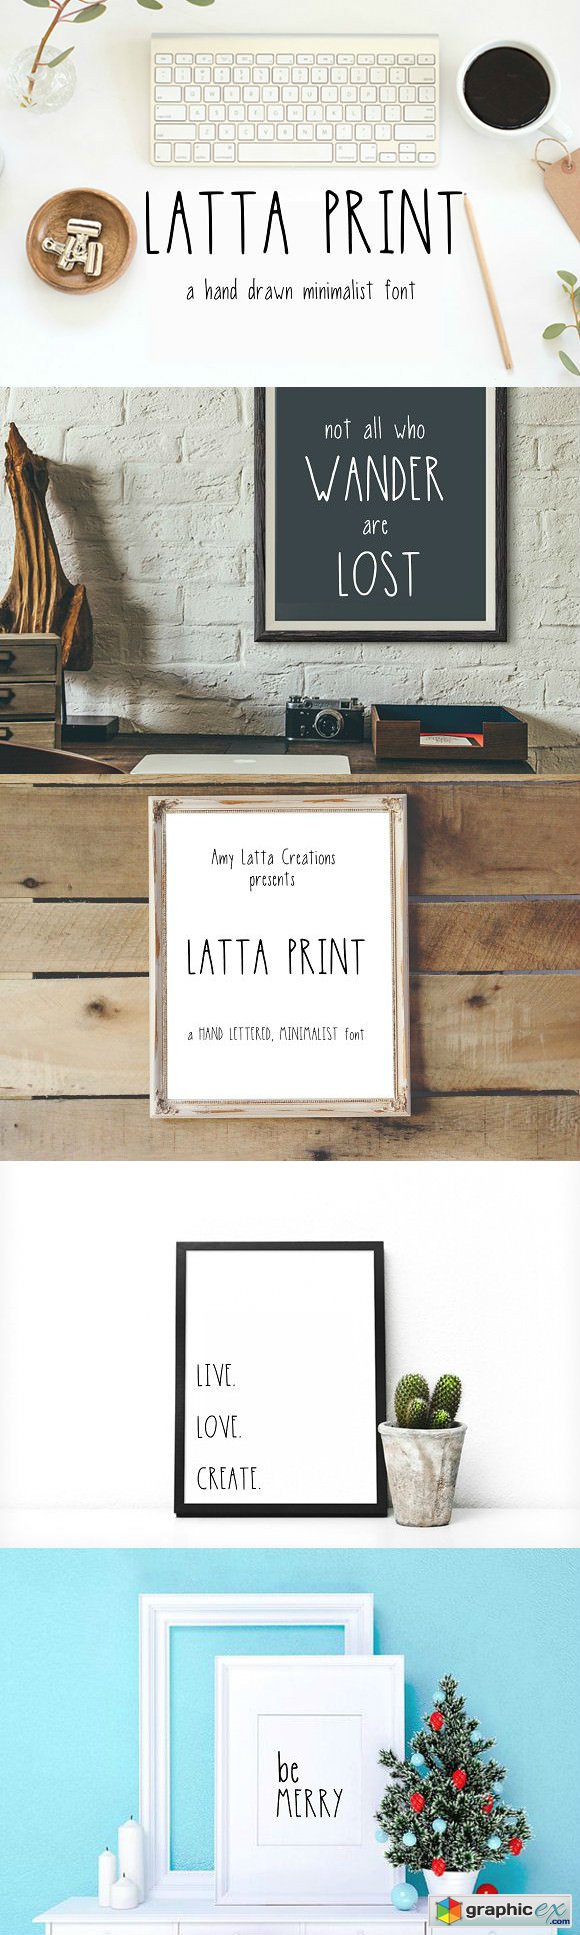 Latta Print A Minimalist Print Font